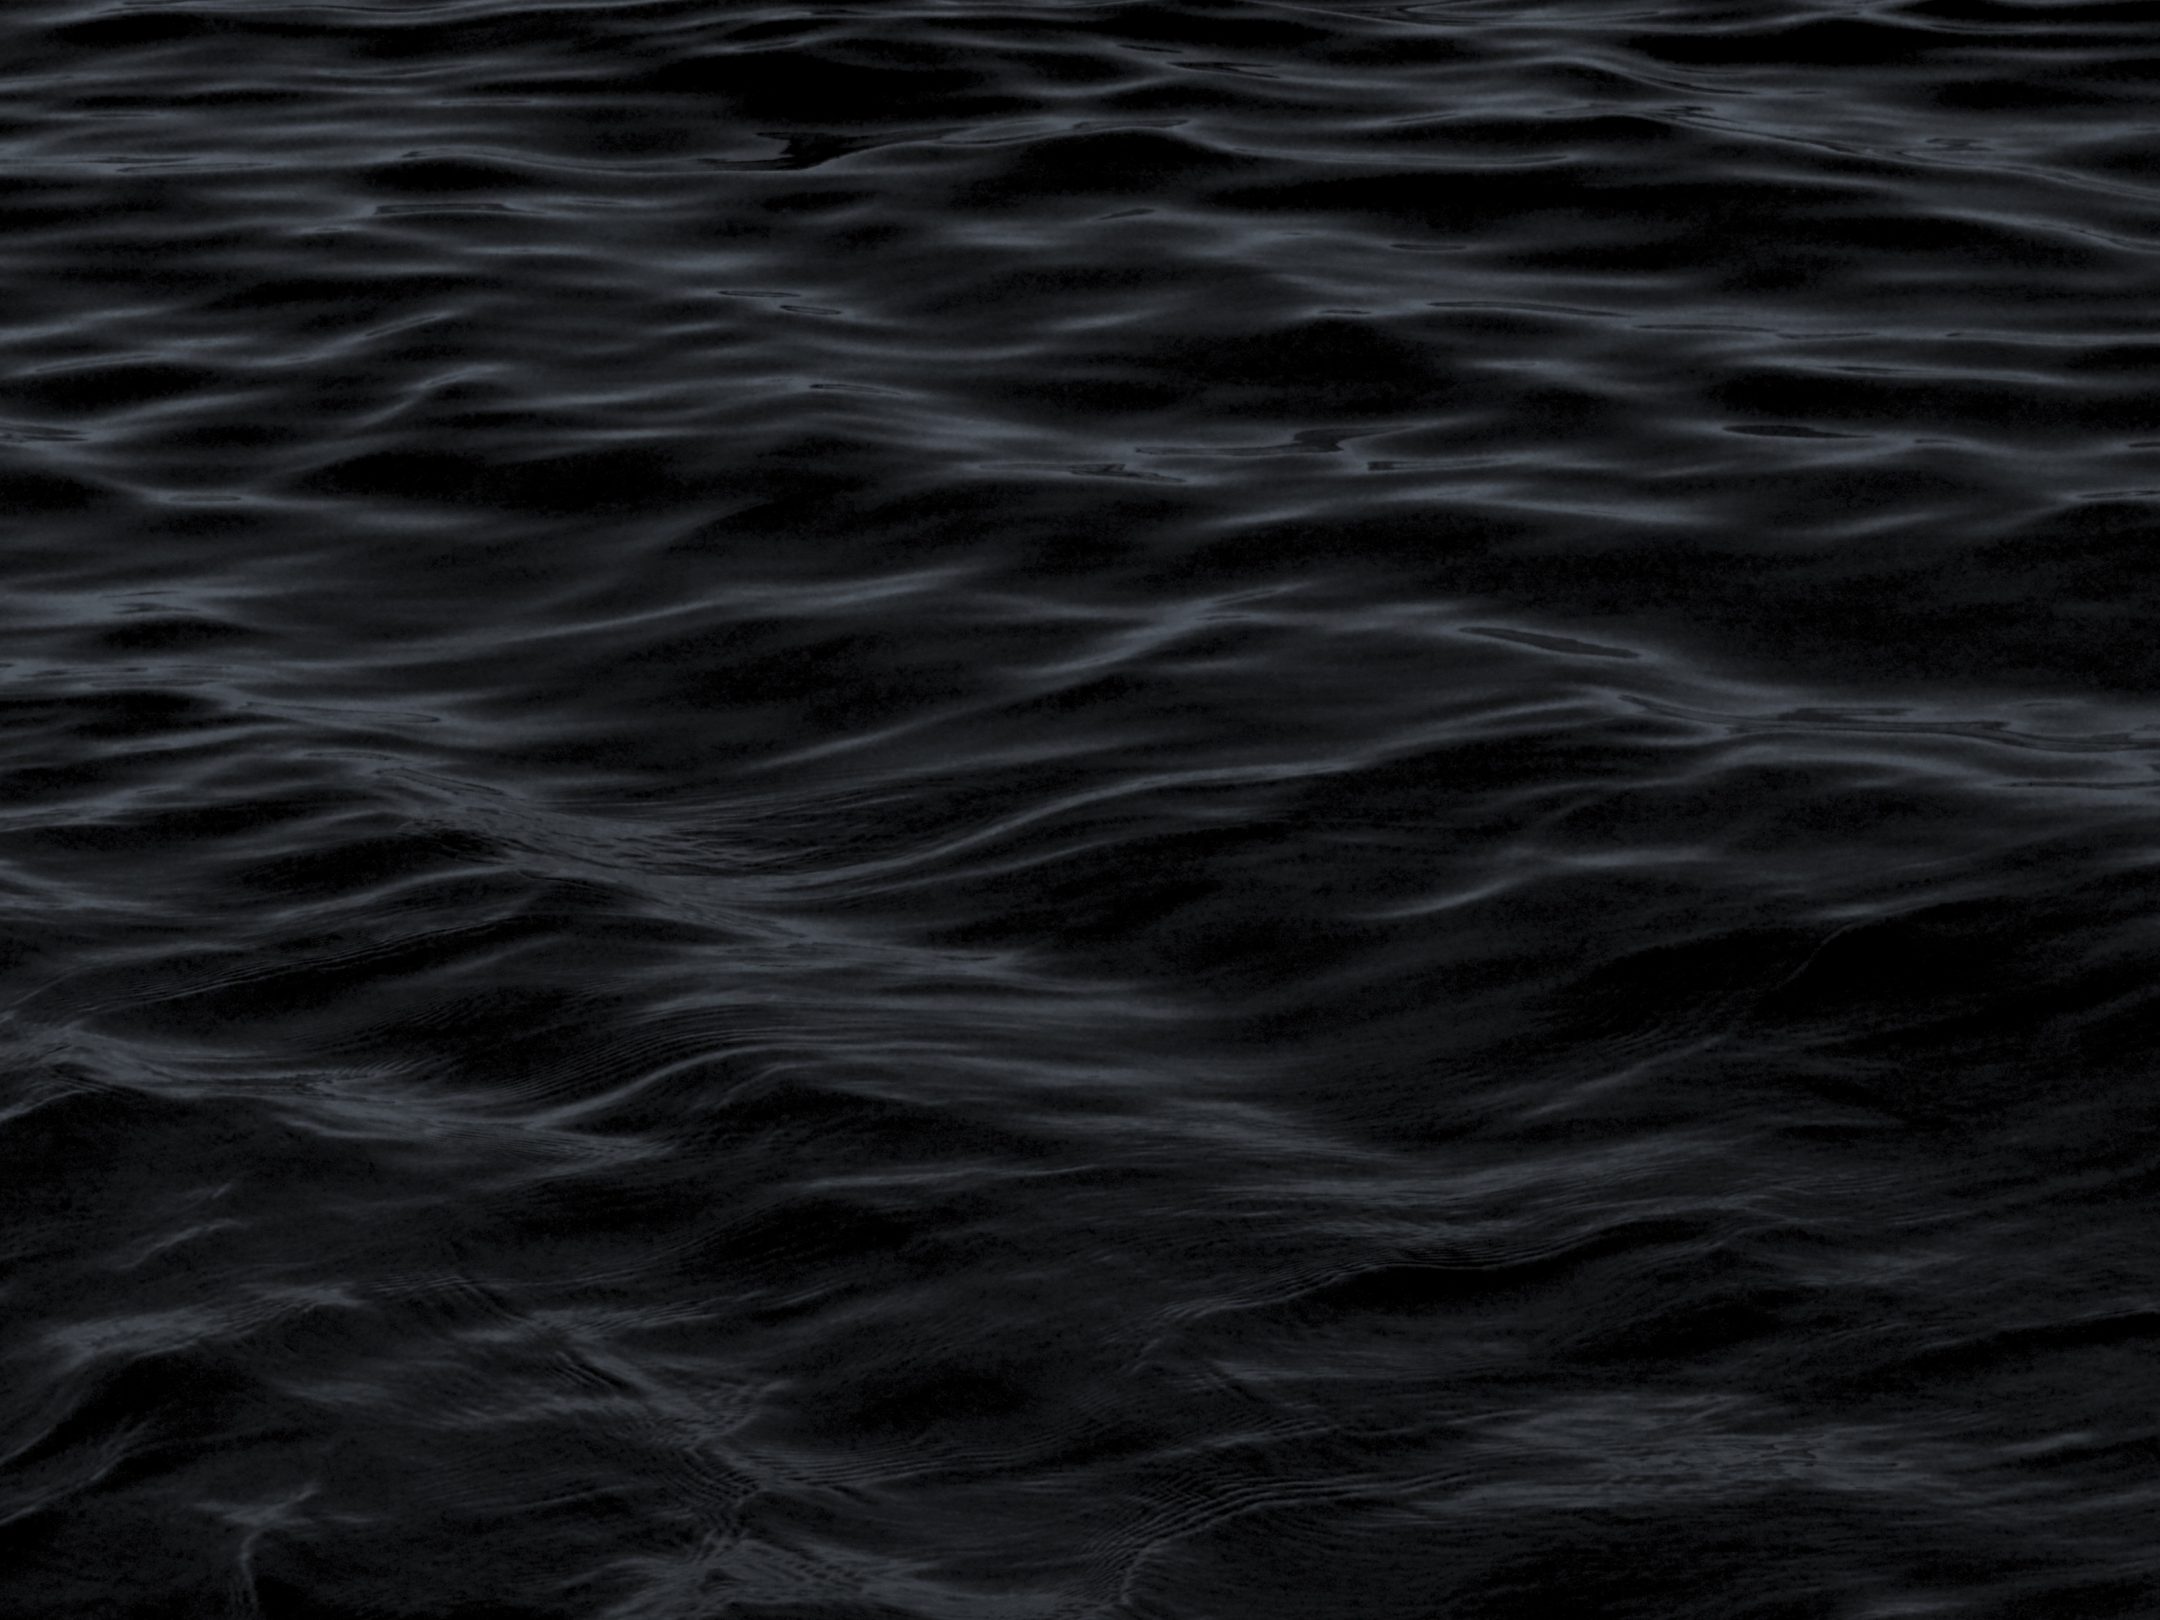 2160x1620 iPad wallpaper 4k Dark Water Waves Sea Pattern iPad Wallpaper 2160x1620 pixels resolution